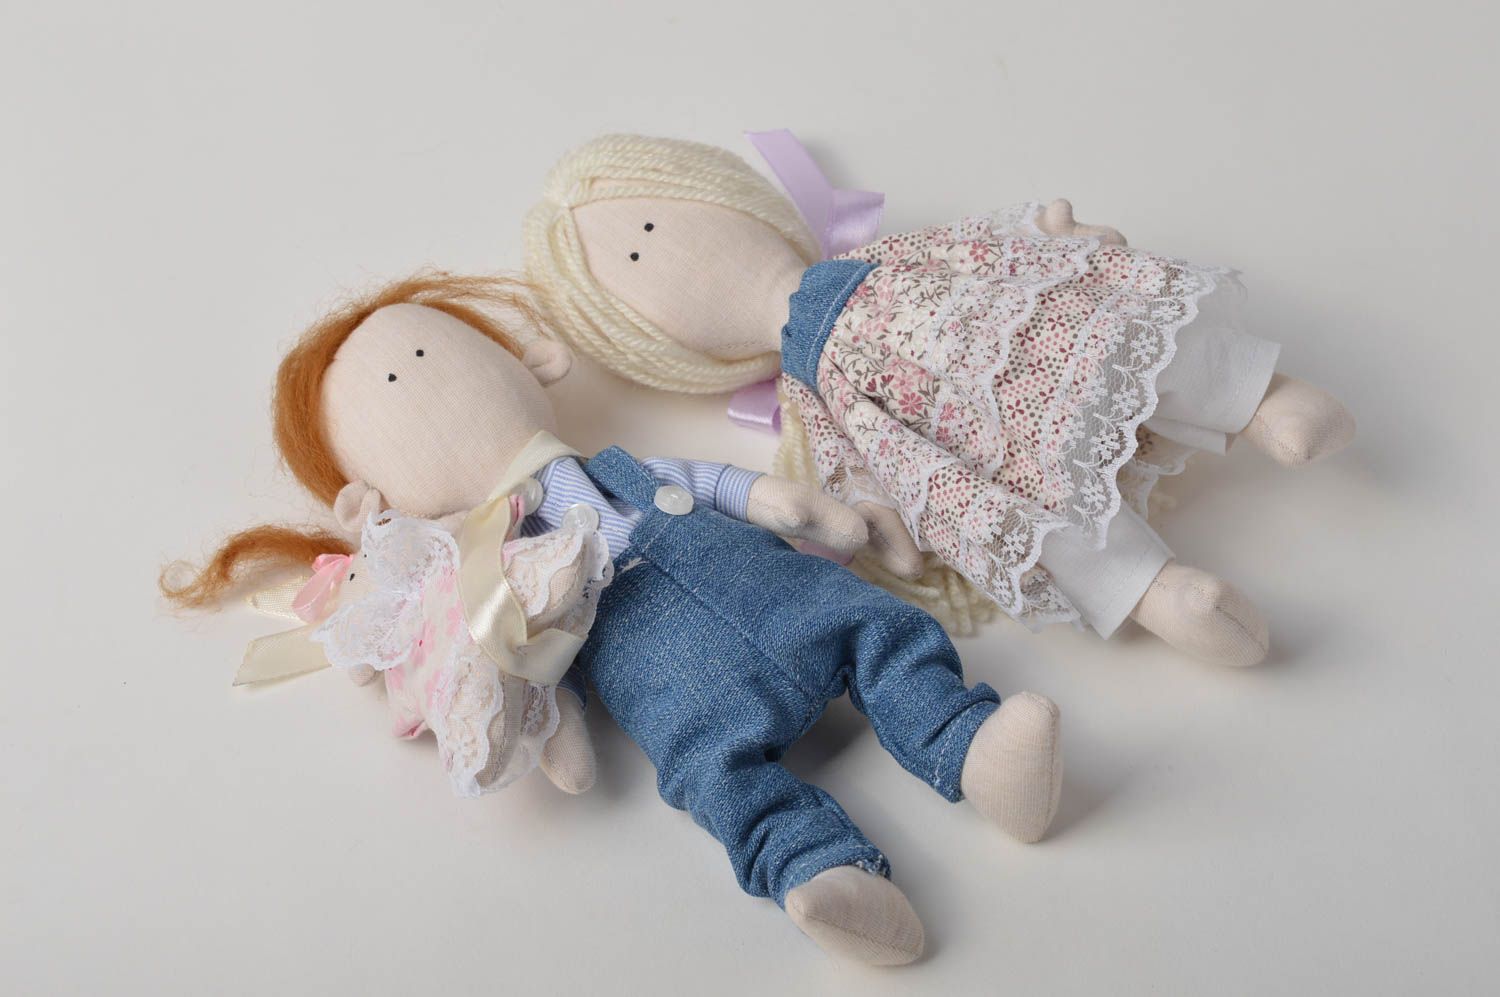 Handmade doll set of dolls designer doll unusual gift for girl nursery decor photo 2